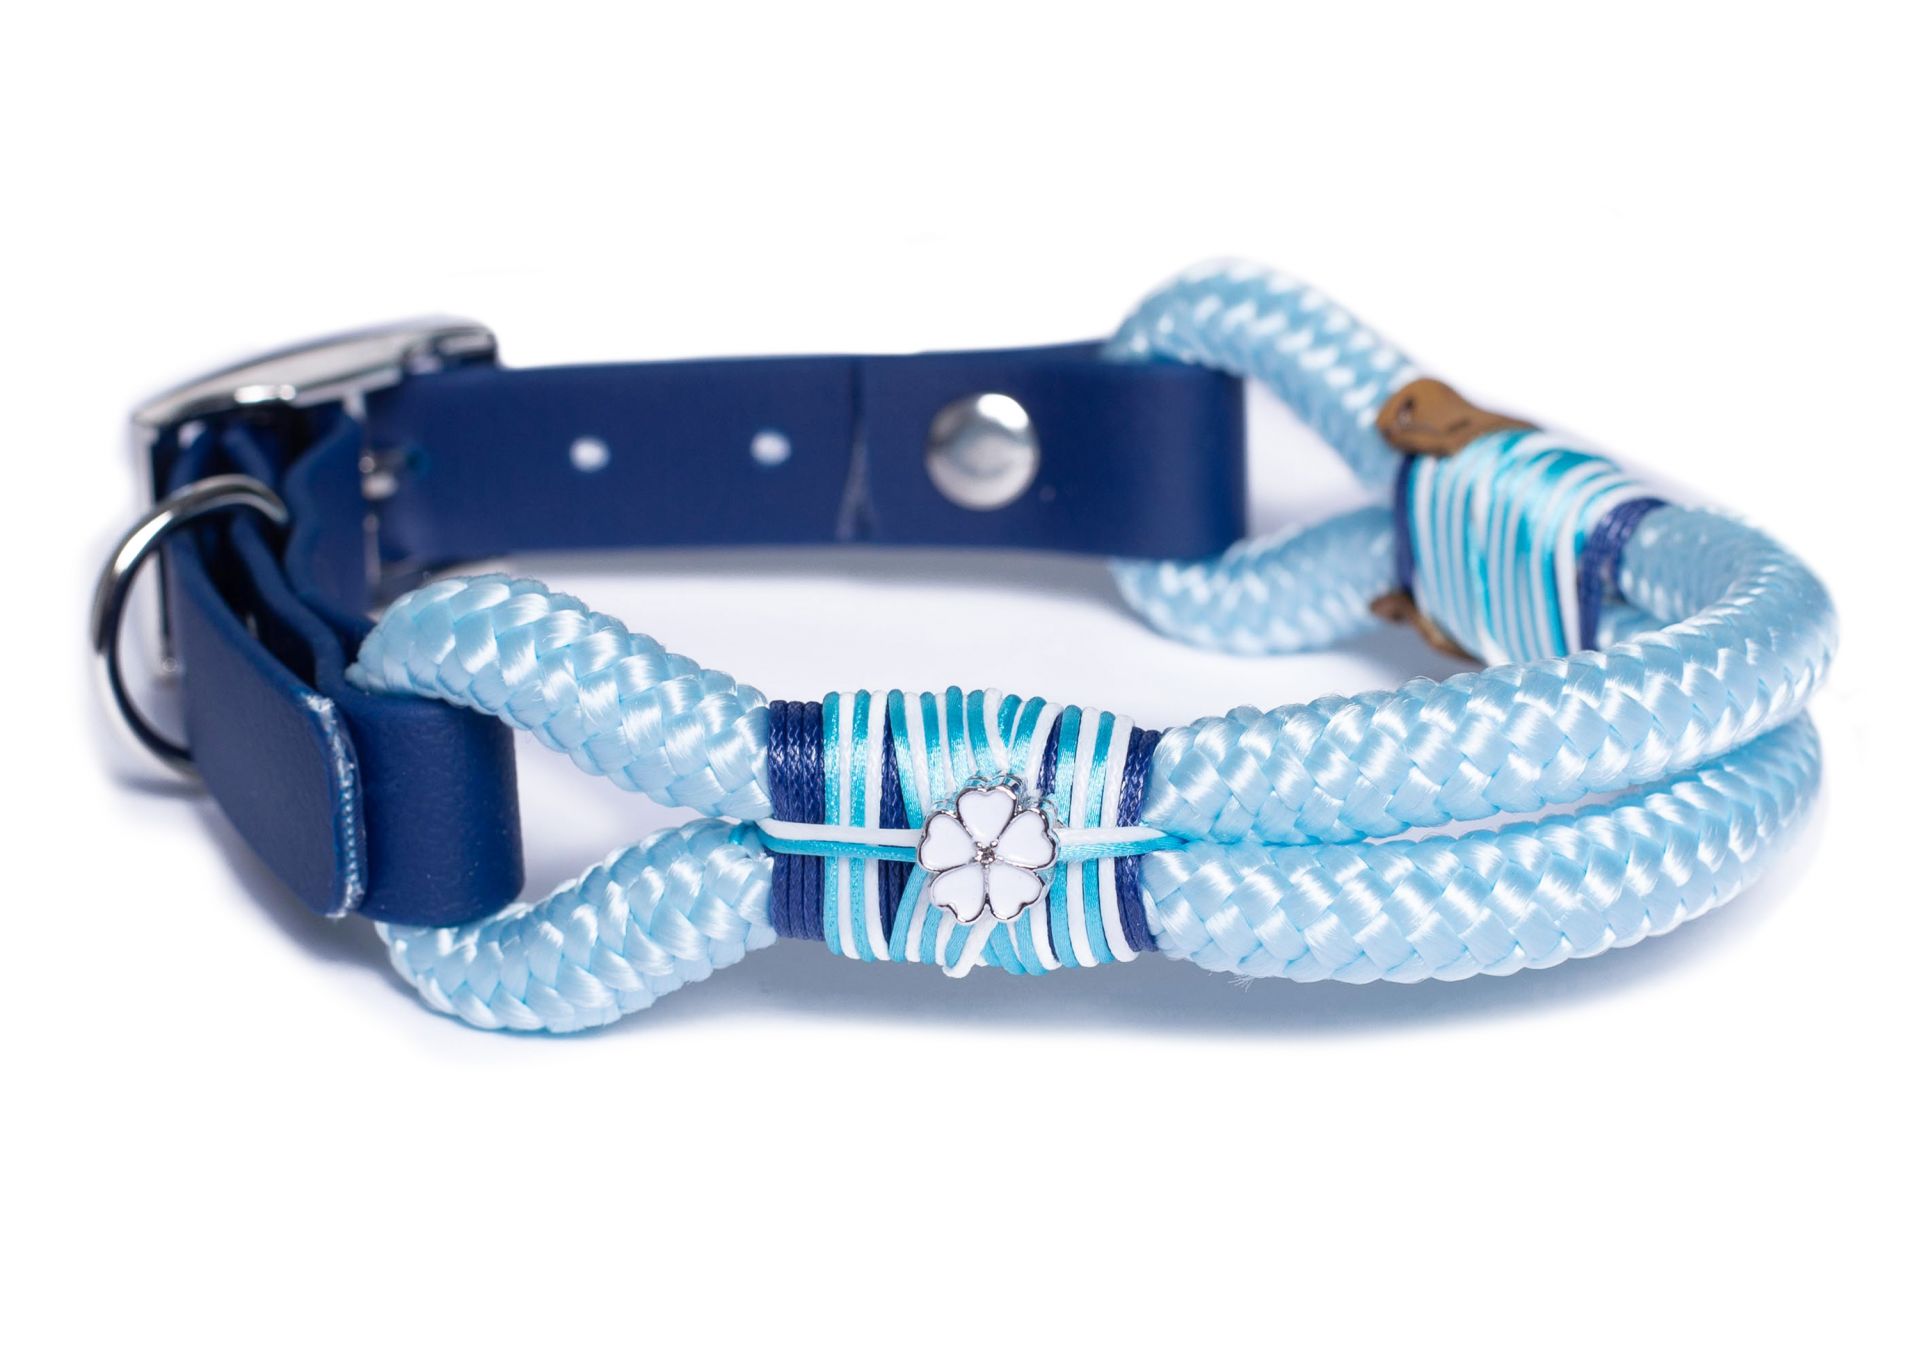 Halsband Hundehalsband Tauhalsband ohne Perlen Vegan Handarbeit abwaschbar verstellbar wasserabweisend robust Gassi gehen silber hellblau blau